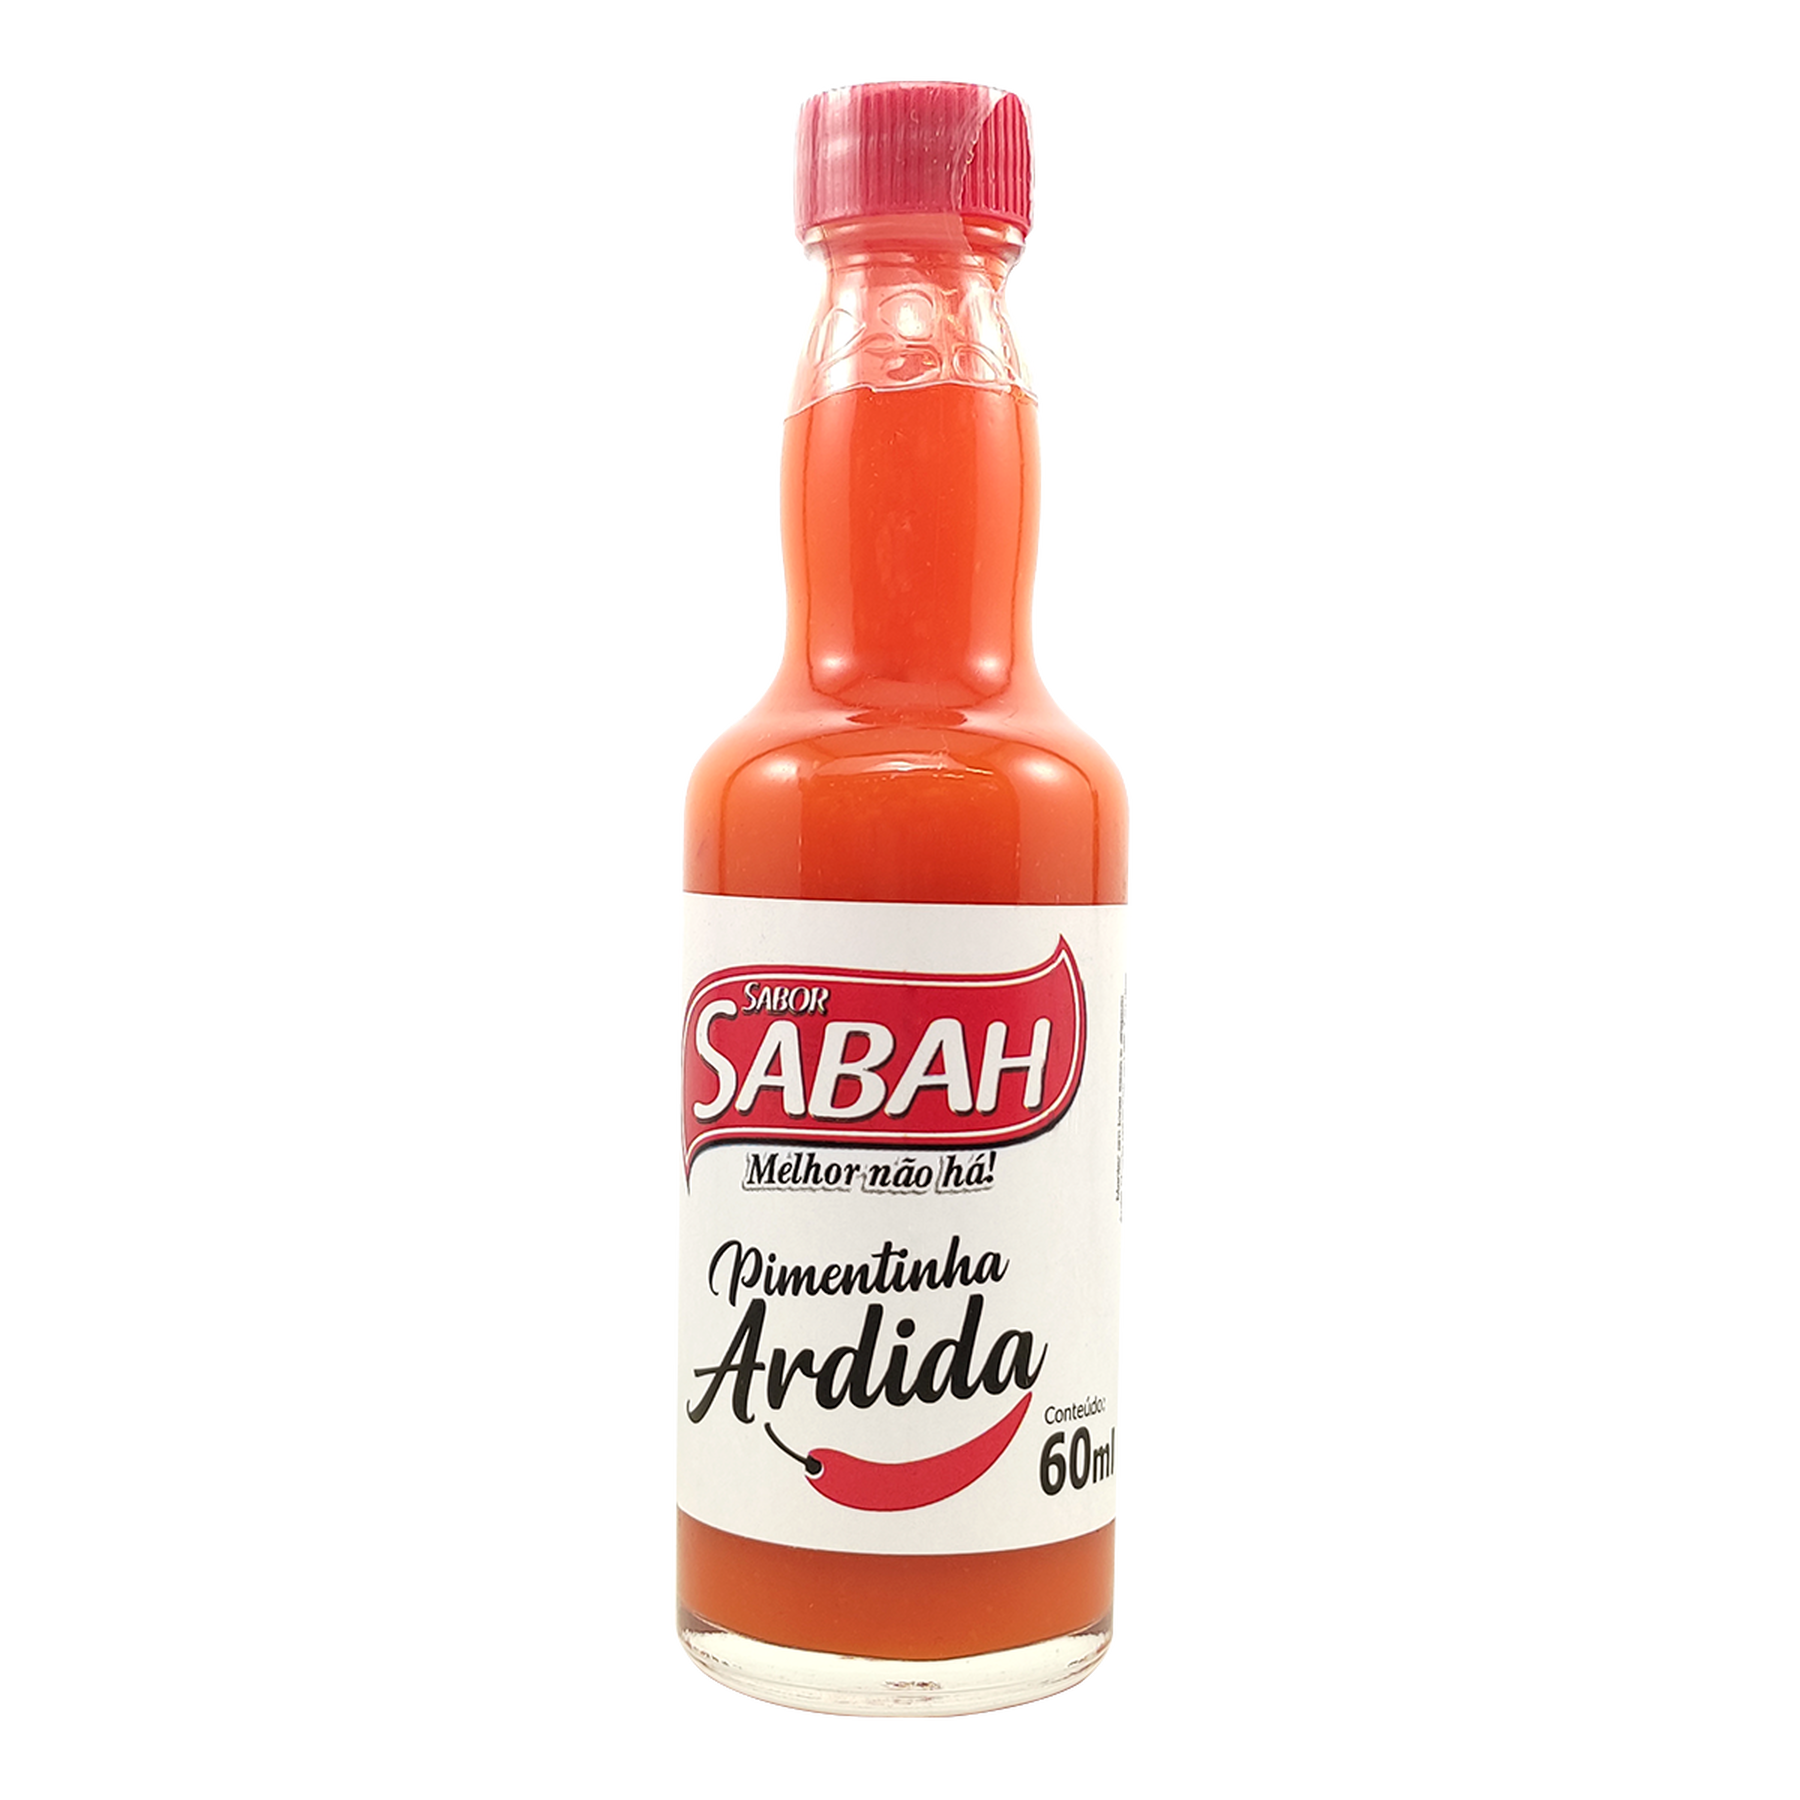 Pimentinha Ardida Sabah 60ml